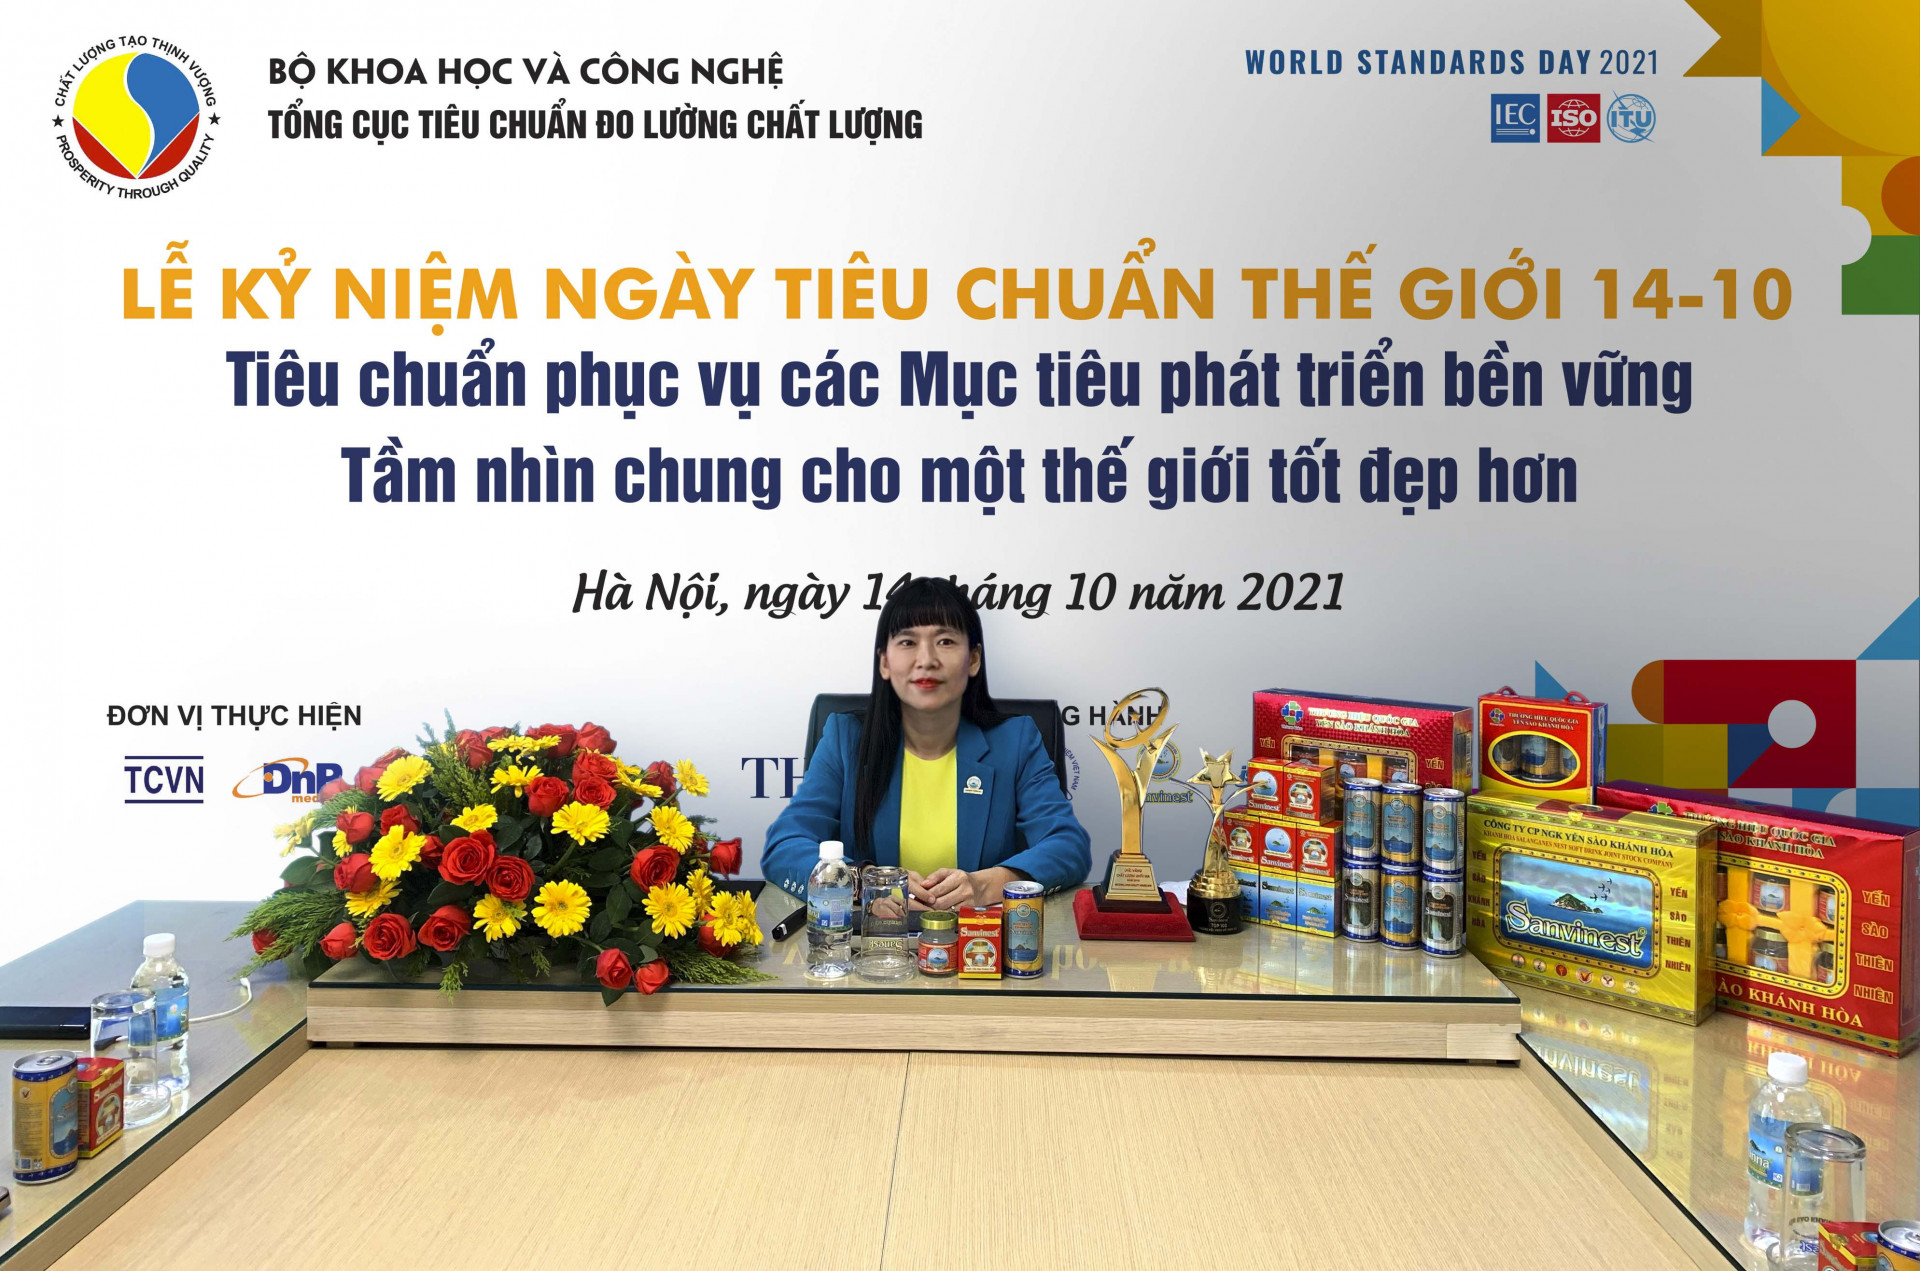 Bà Trịnh Thị Hồng Vân – Phó Tổng giám đốc Côngty Yến sào Khánh Hoà; Chủ tịch Hội đồng quản trị Savinest Khánh Hoà dự lễ kỷ niệm và trao giải trực tuyến.